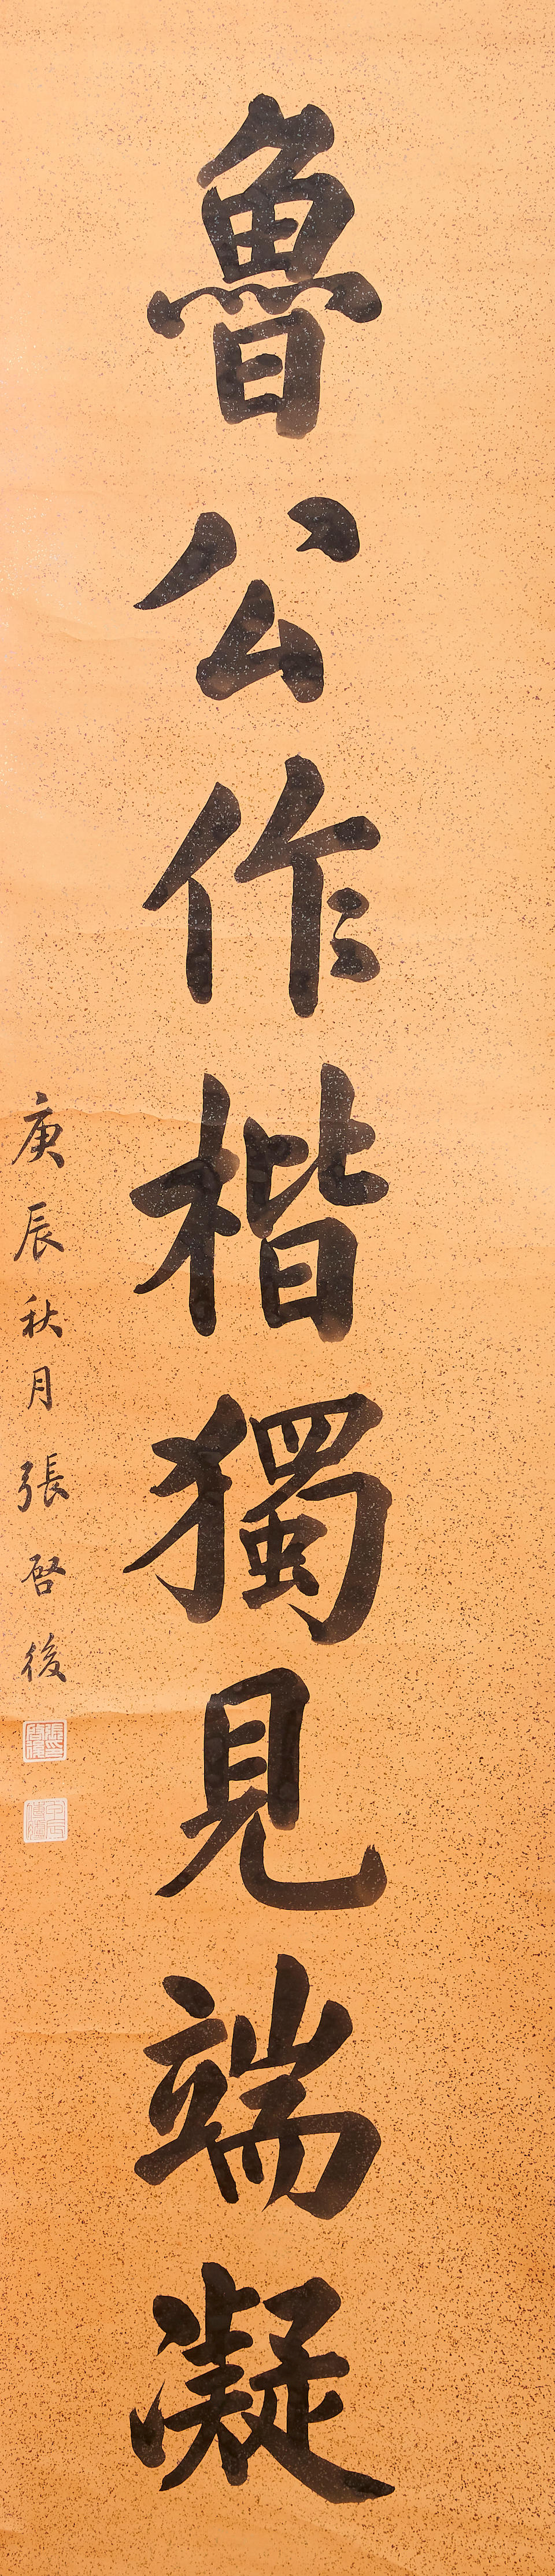 Zhang Qihou (1873-1944) Calligraphy Couplet in Regular Style (2) - Image 2 of 3